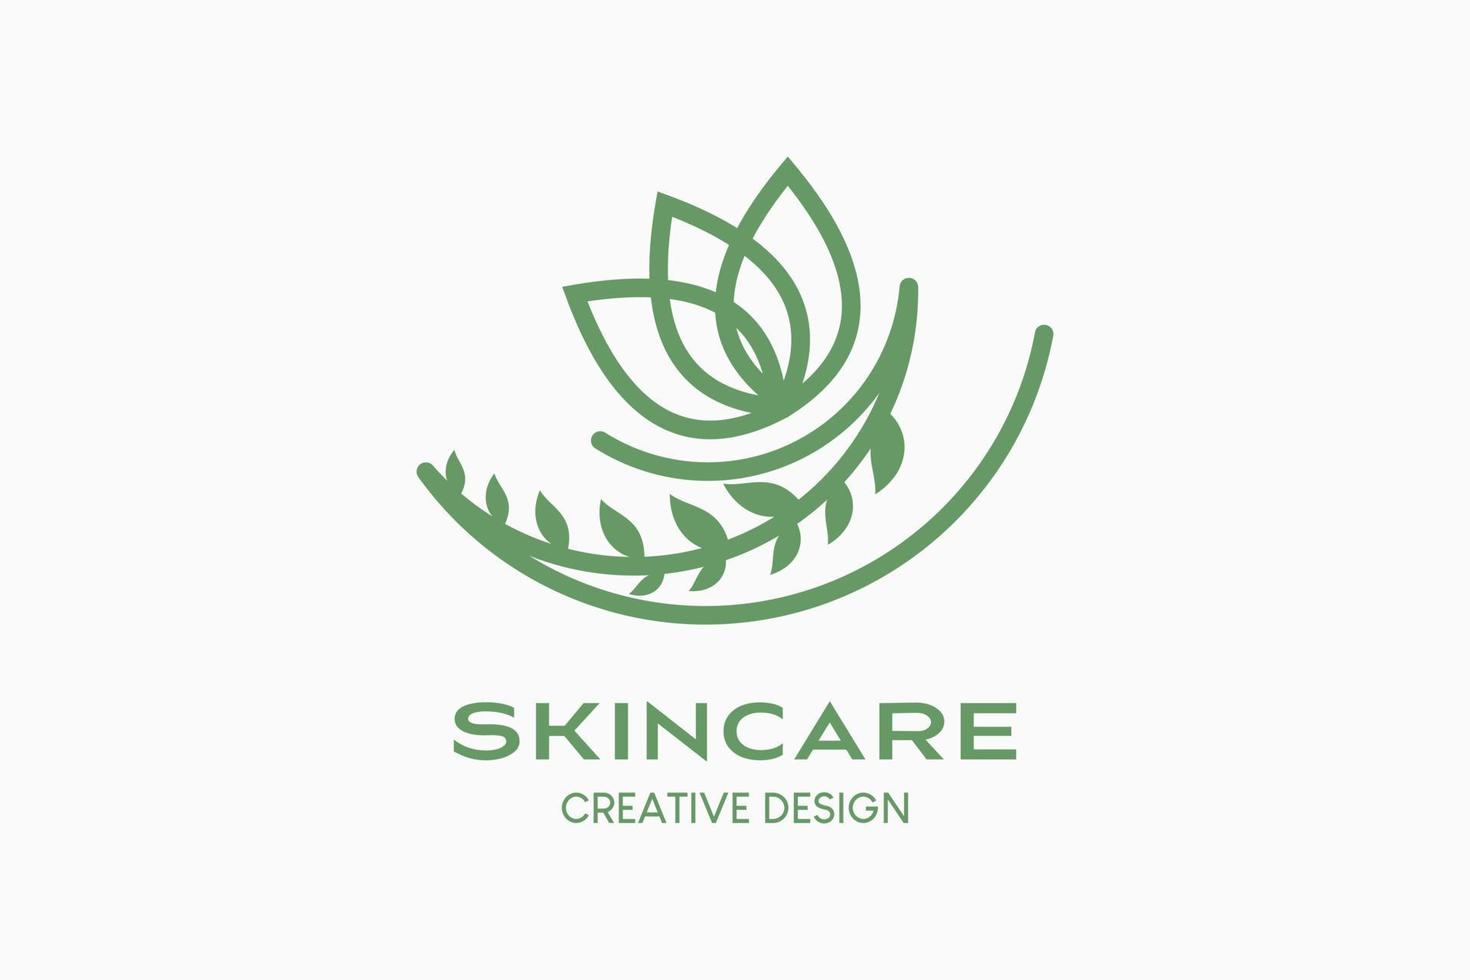 diseño de logotipo para el cuidado de la piel con concepto creativo, flores en estilo de arte lineal. vector